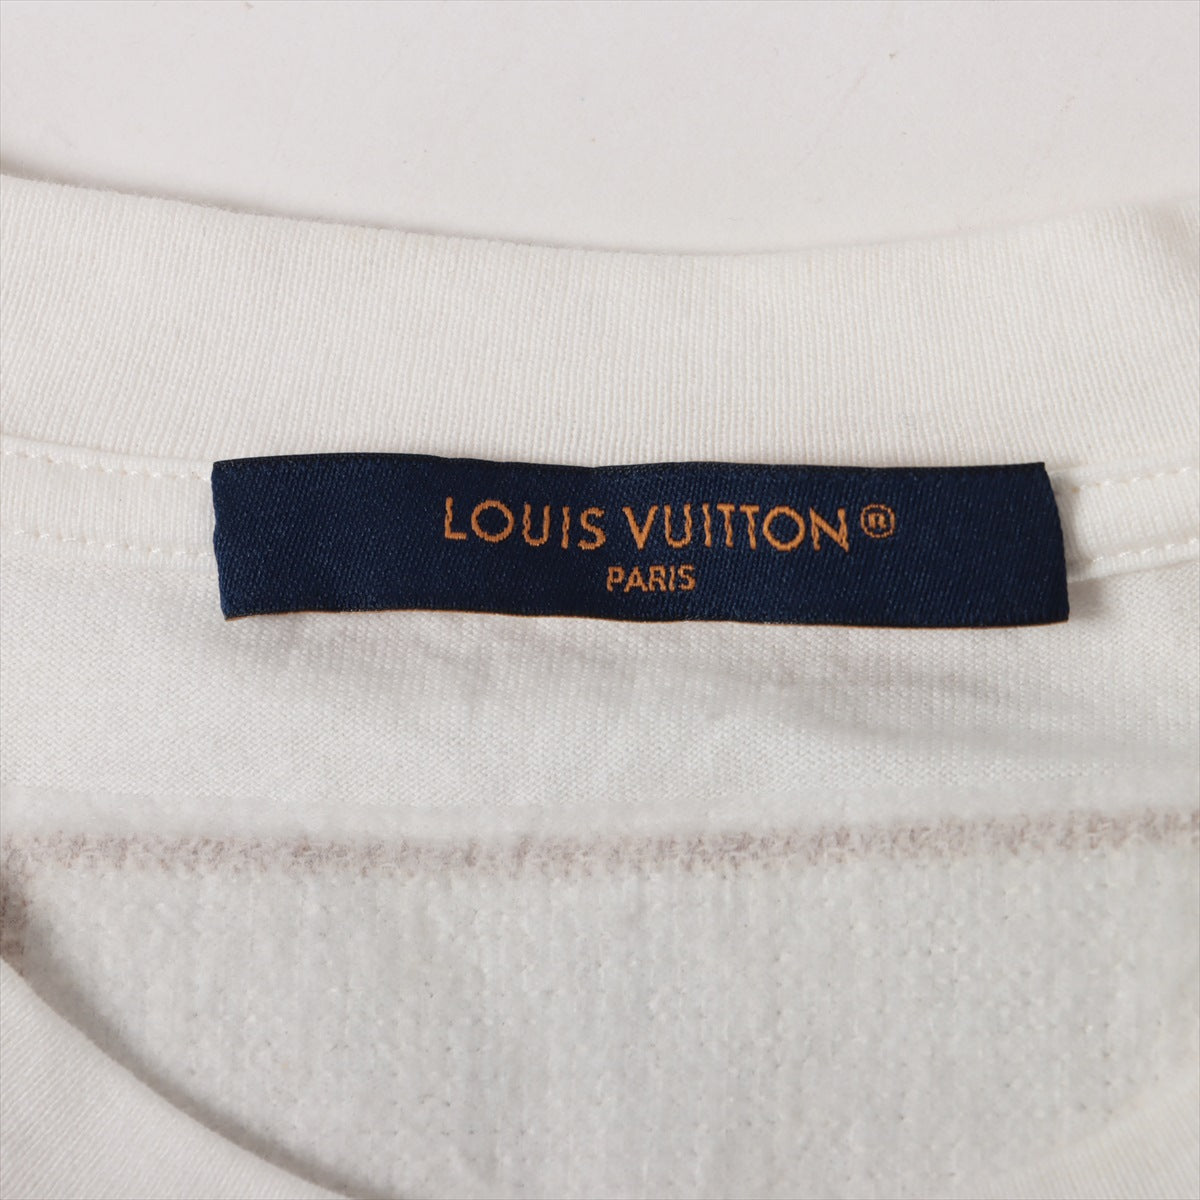 ヴィトン 23AW コットン Tシャツ L メンズ ホワイト RM232M エンブ